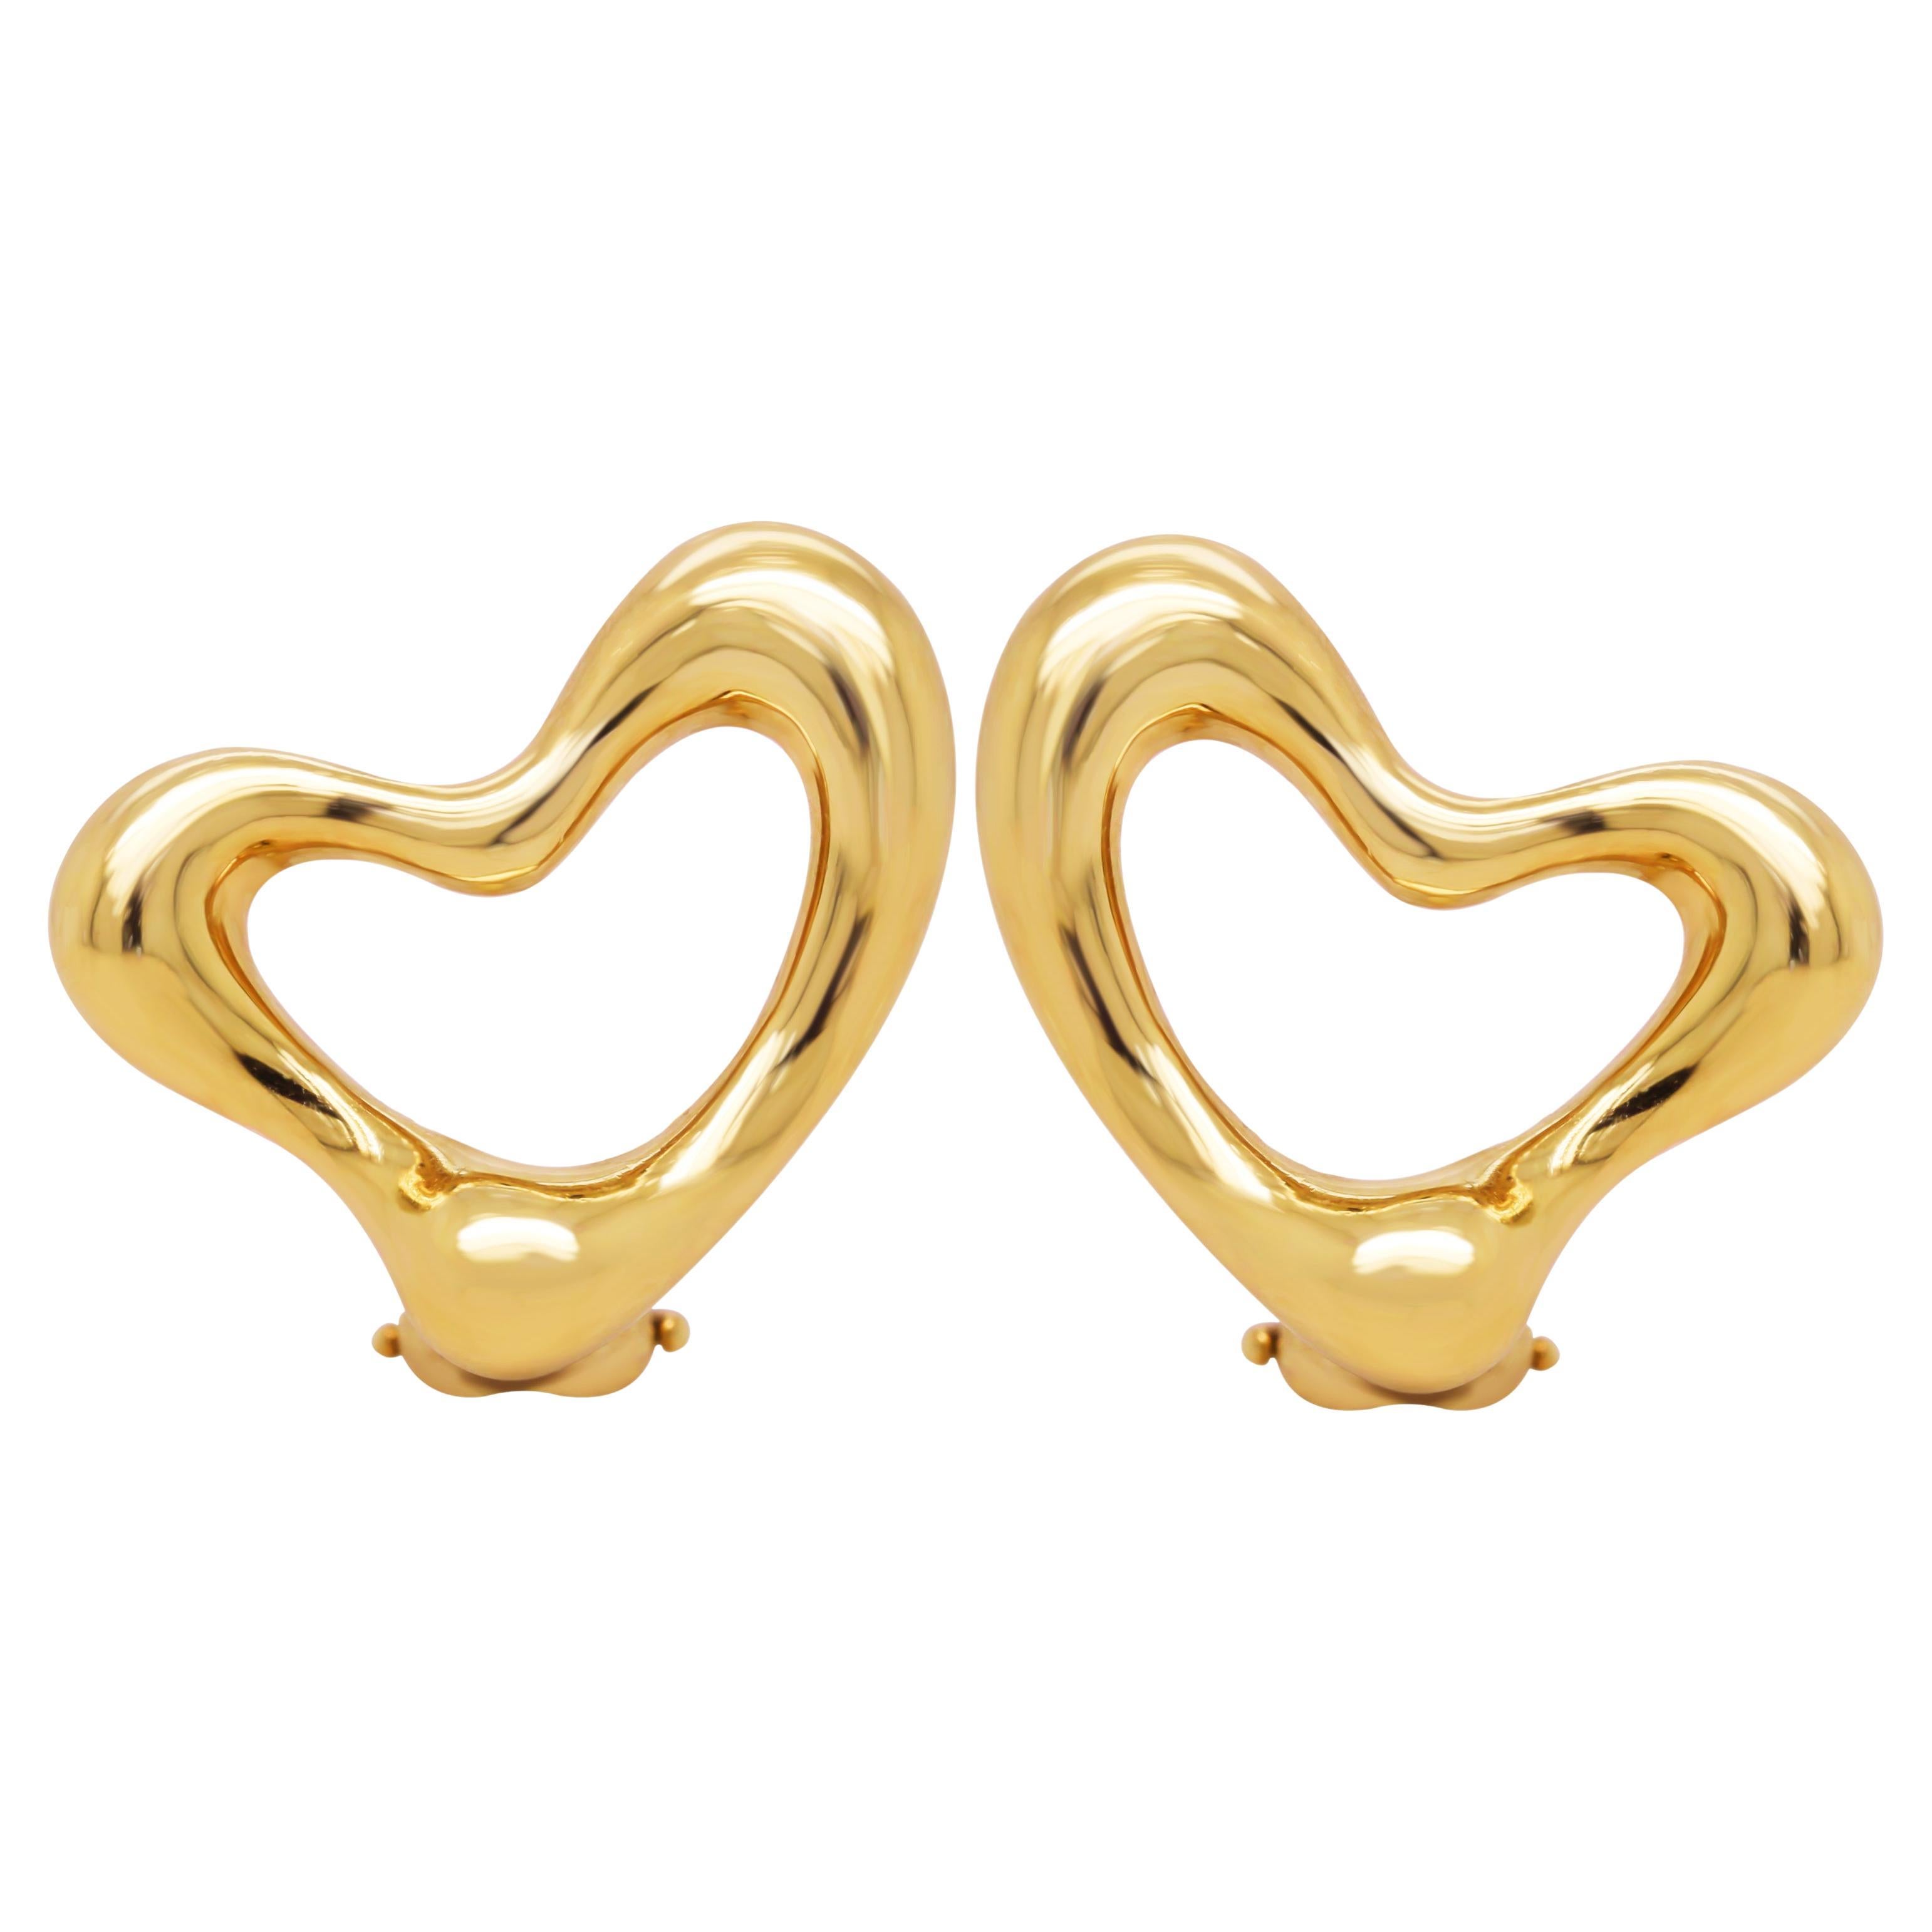 Tiffany & Co. Elsa Peretti 18K Yellow Gold Open Heart Clip On Earrings